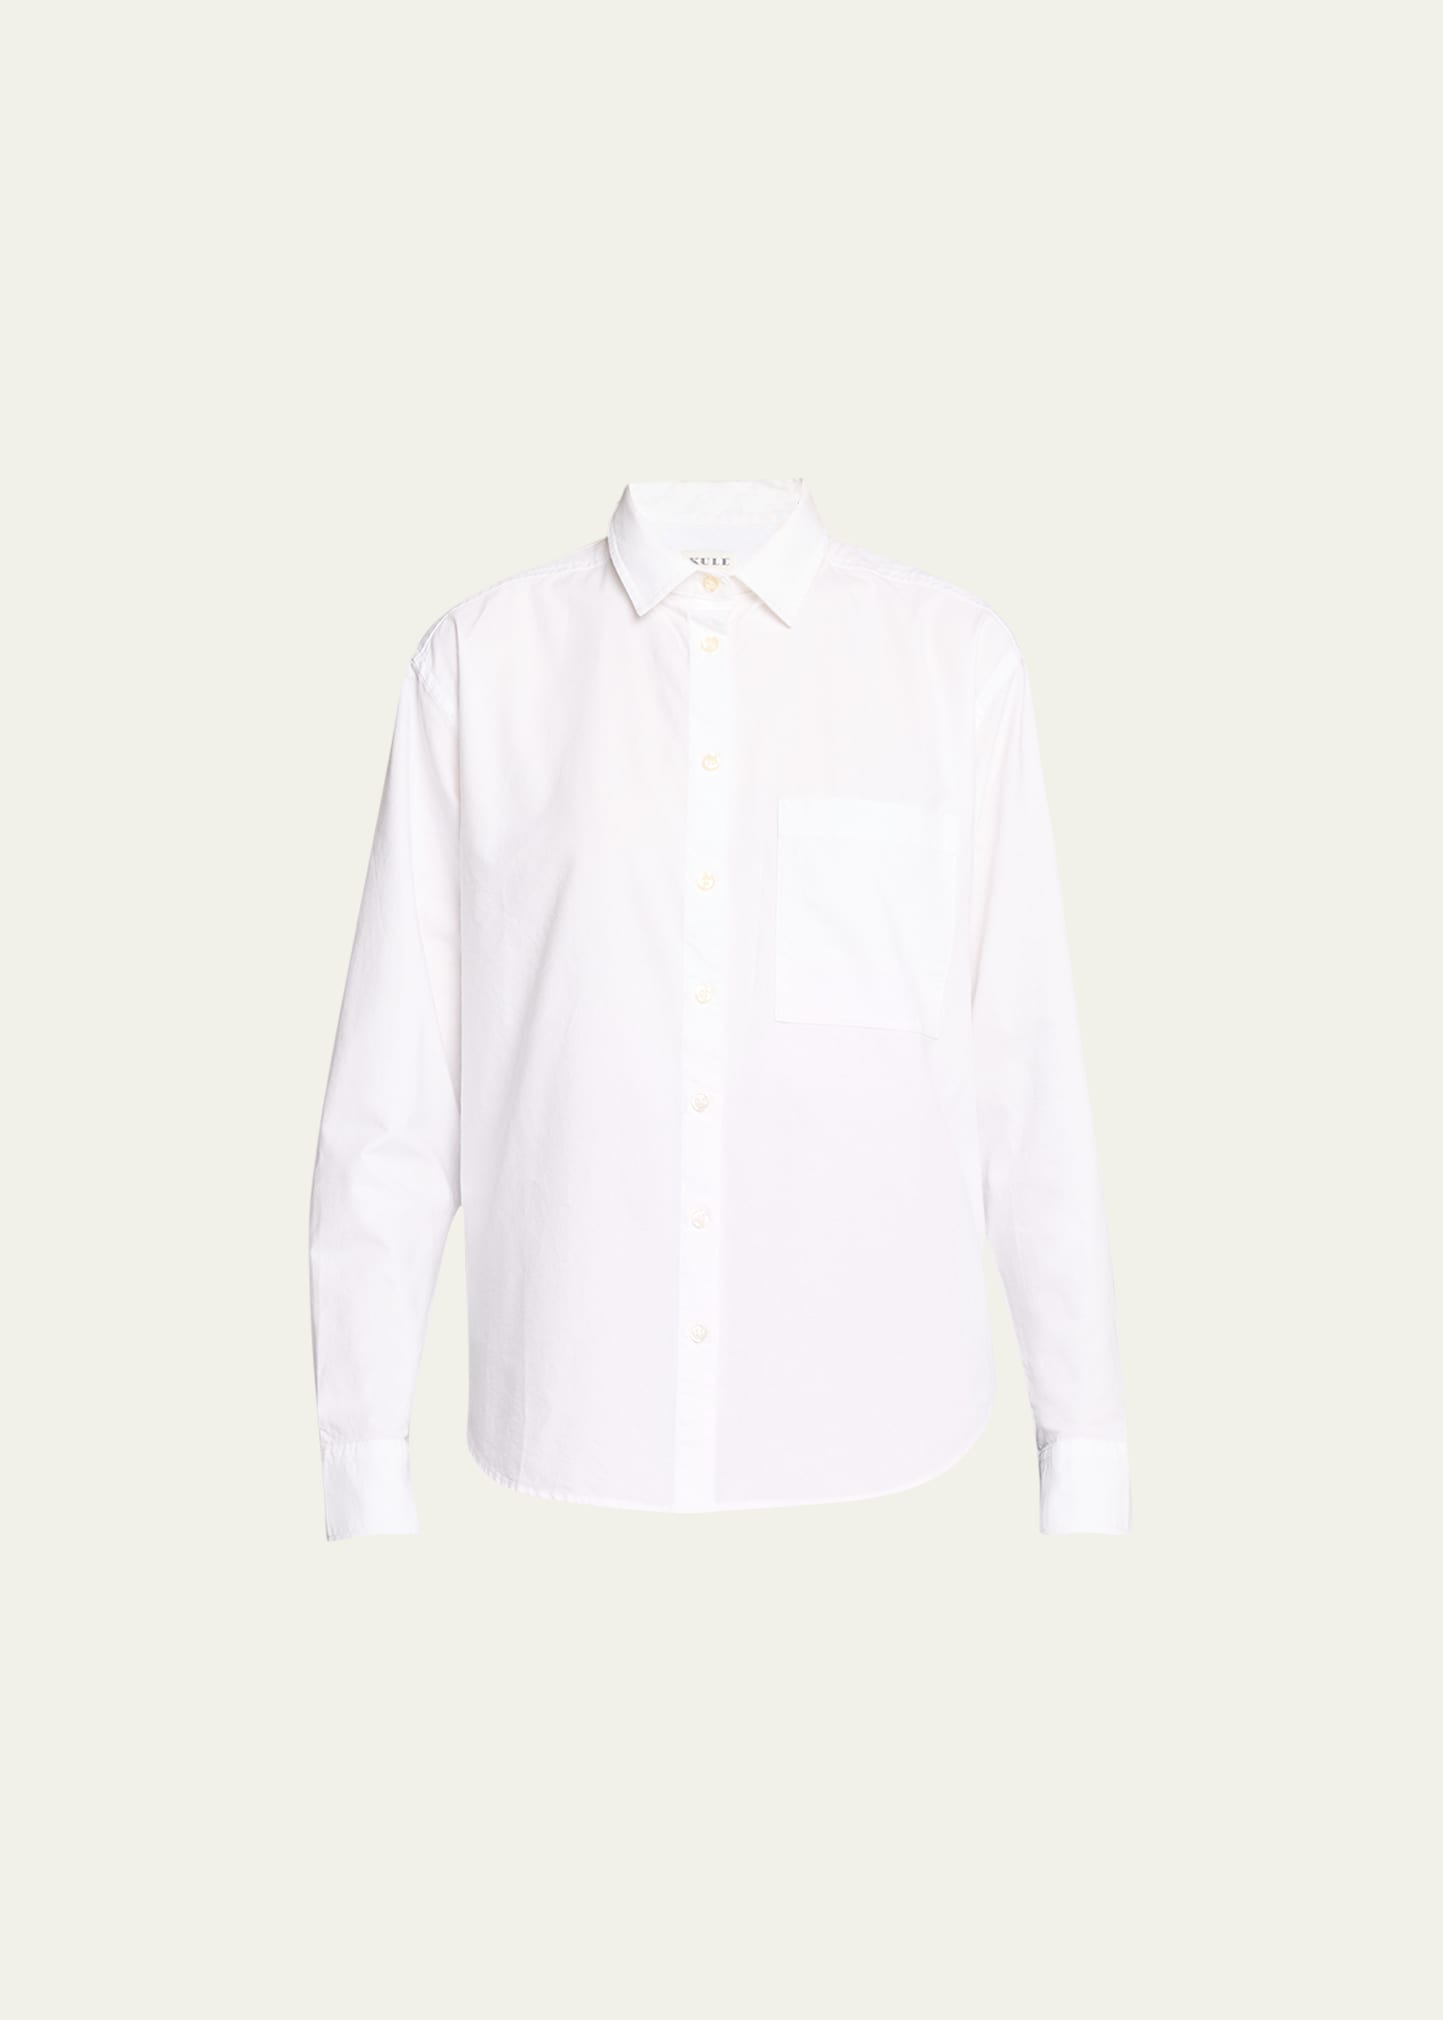 Kule The Quinn Shirt In White